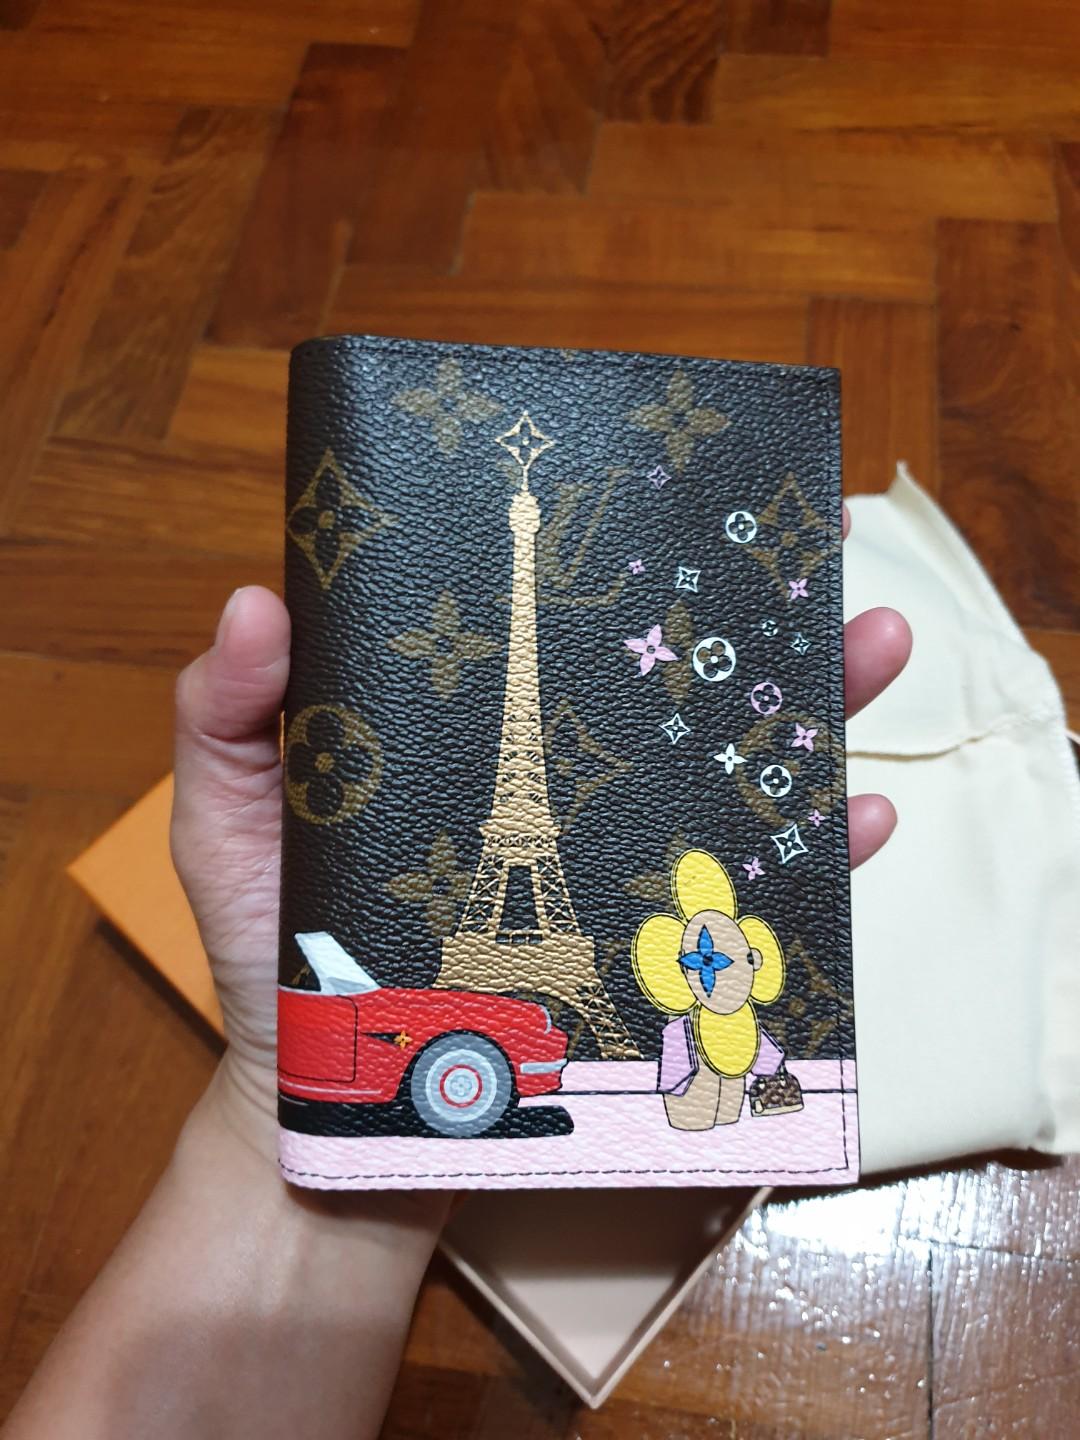 Louis Vuitton Monogram Vivienne Xmas Paris Passport Cover Rouge